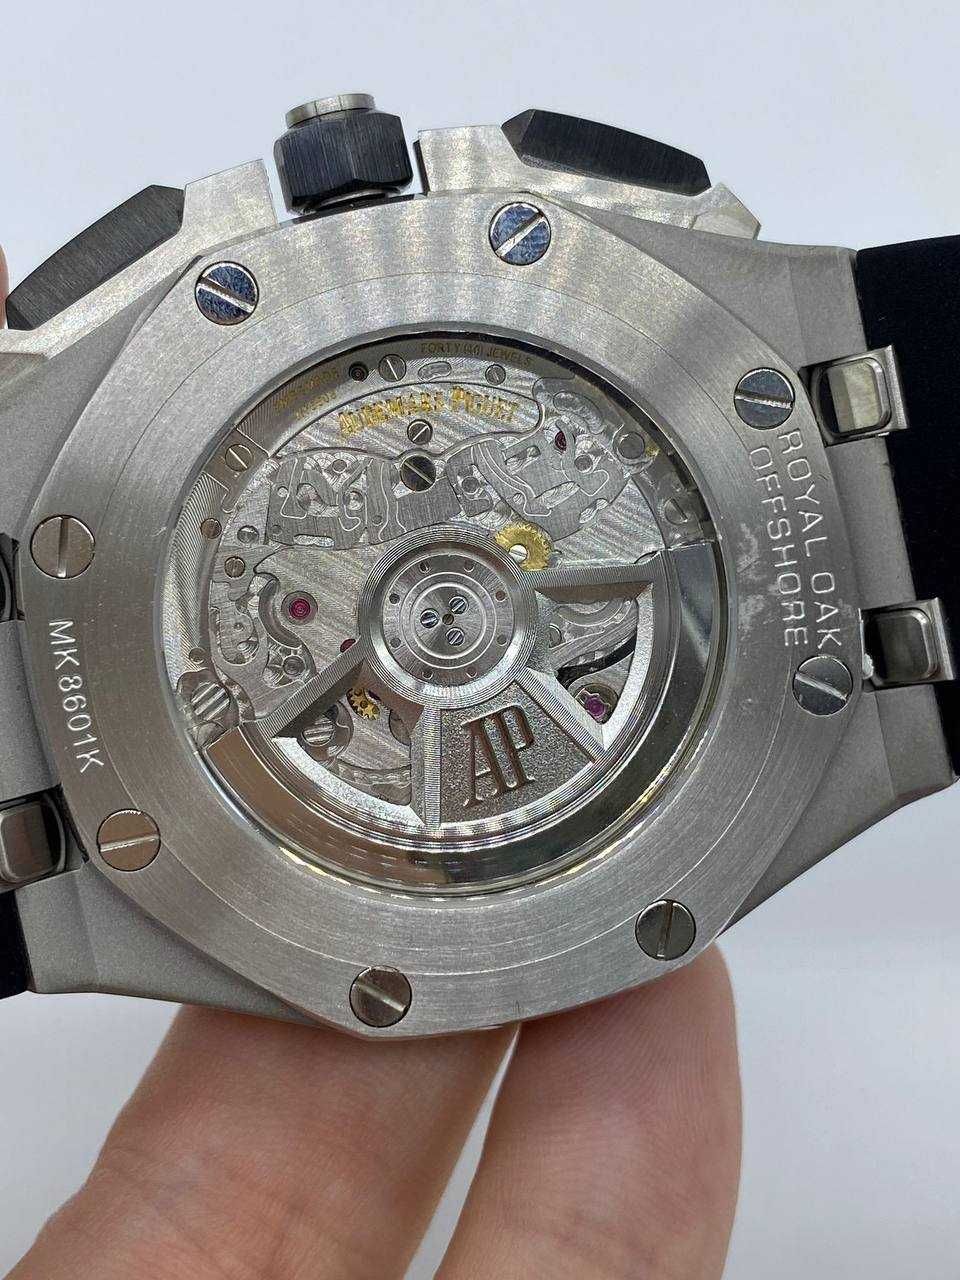 Audemars Piguet Royal Oak Offshore Chronograph Watch Black Dial 43mm